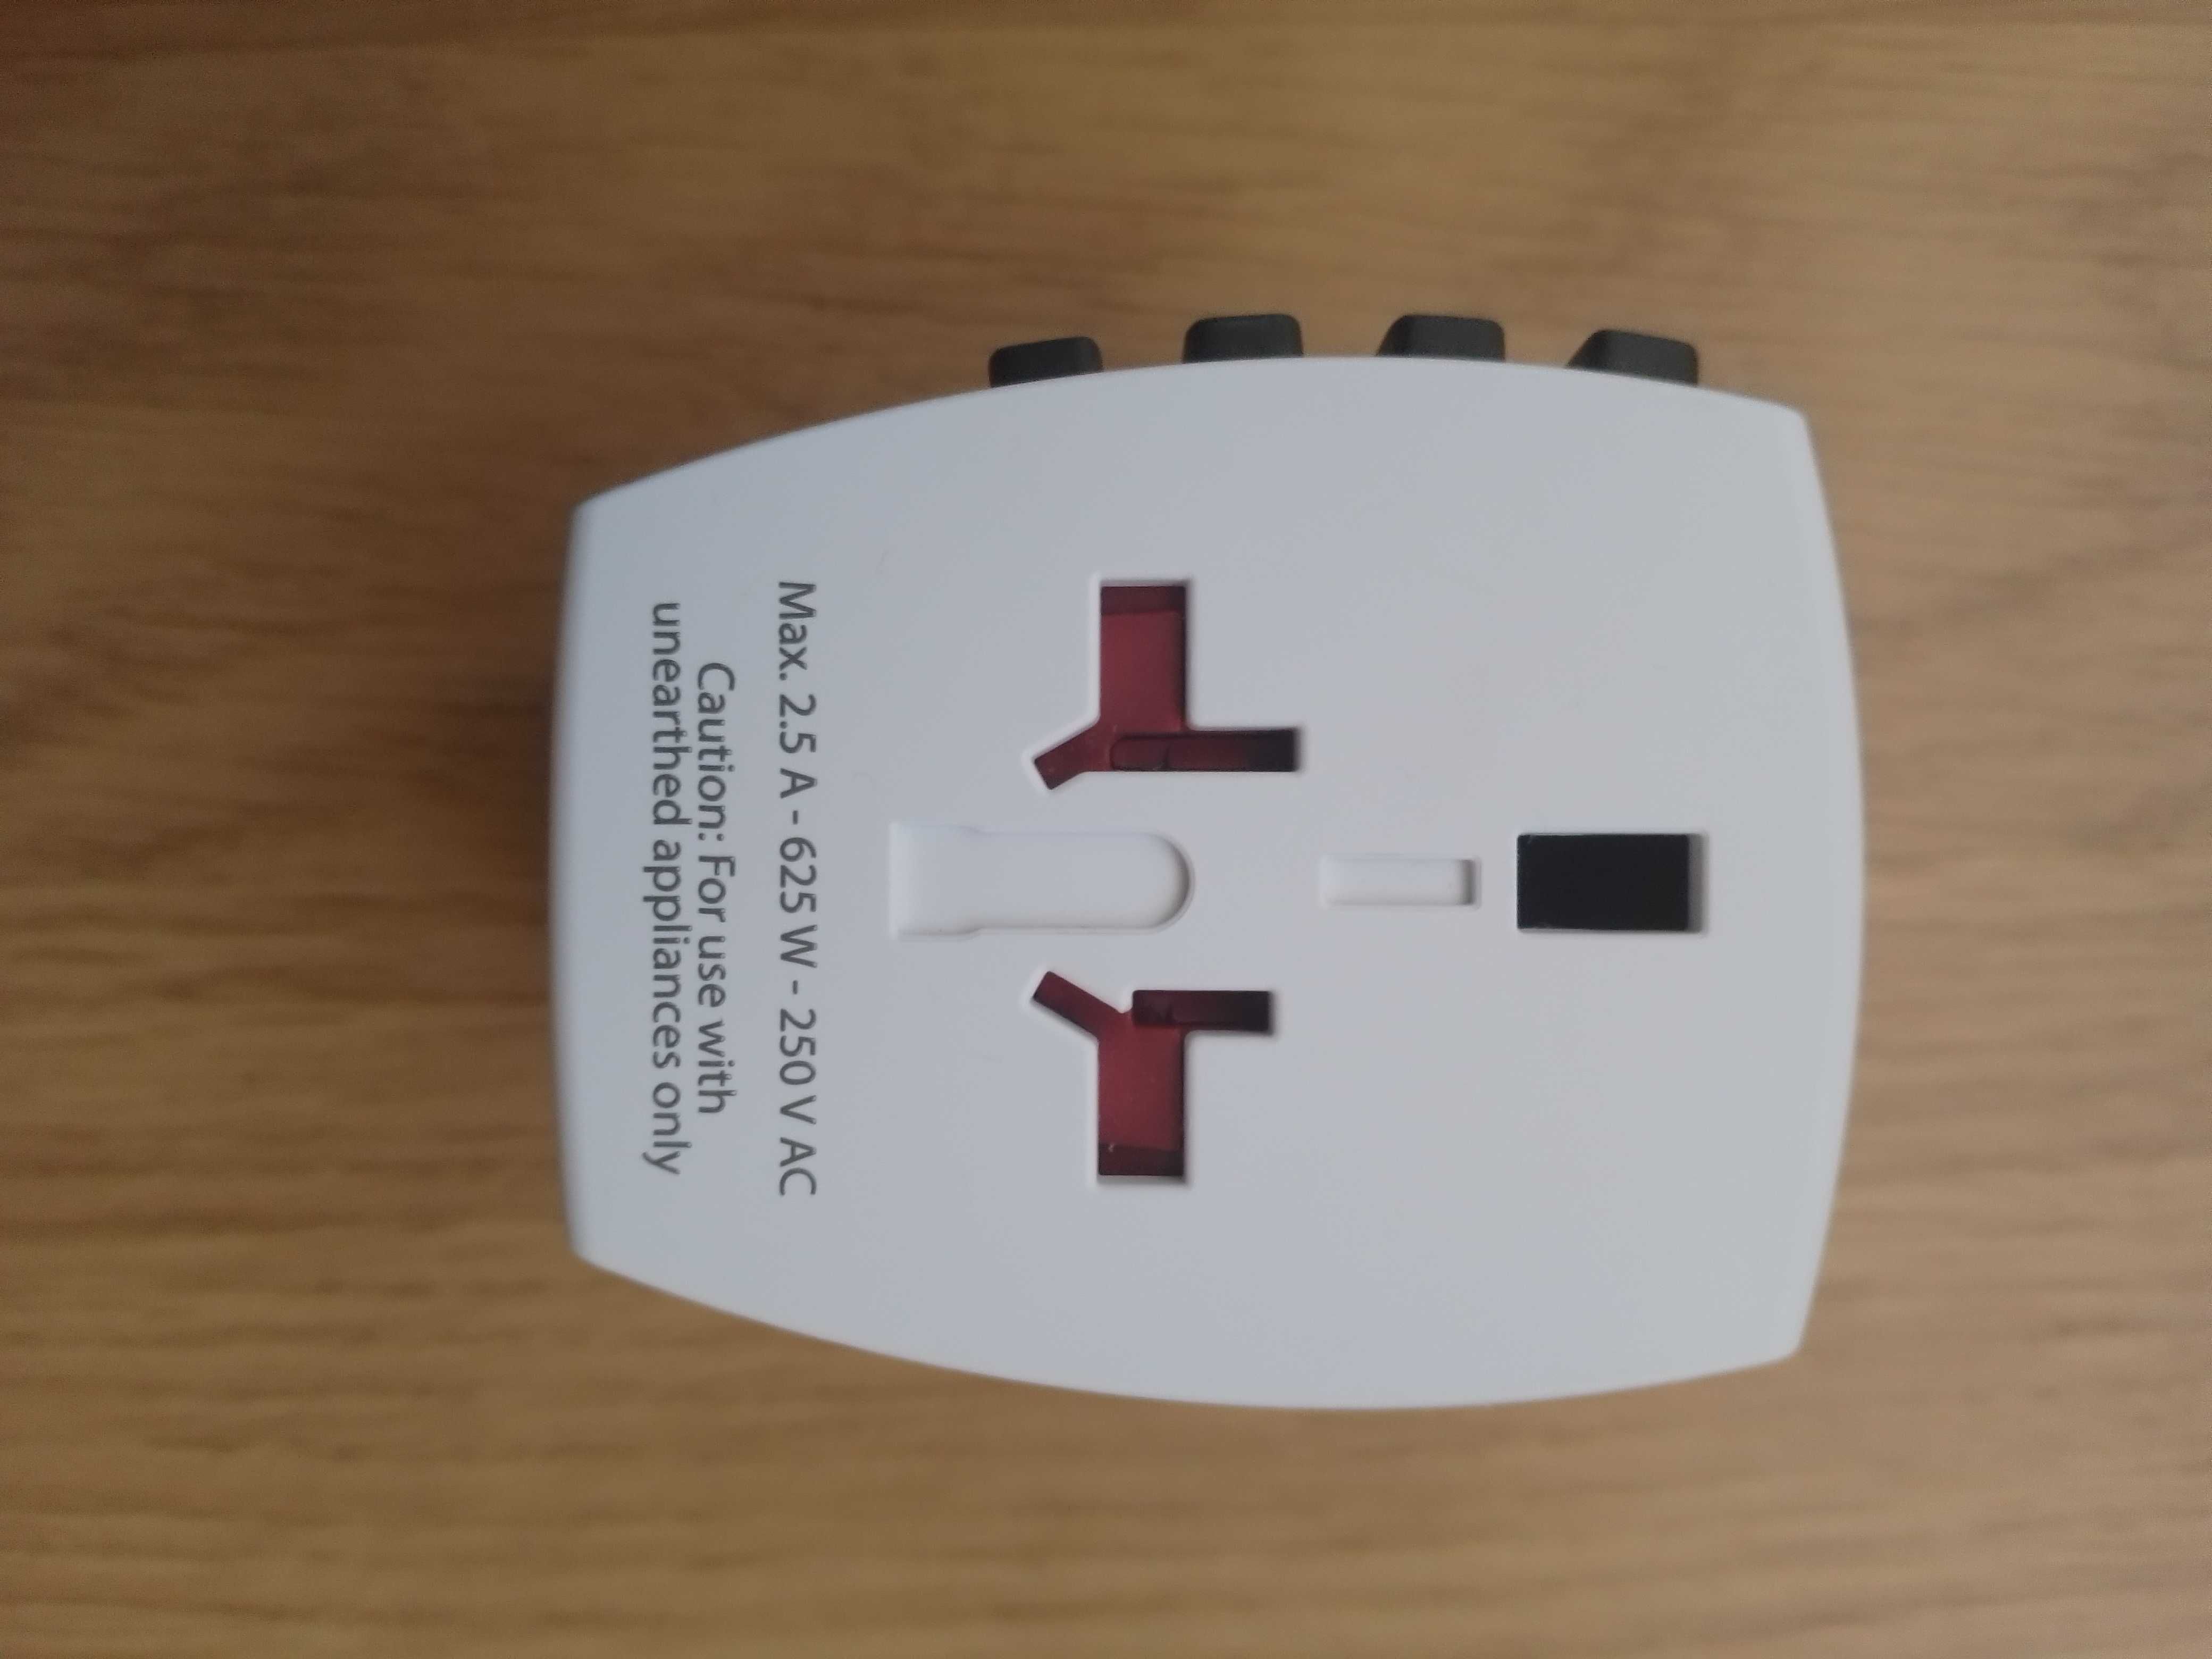 Adaptor Skross MUV USB